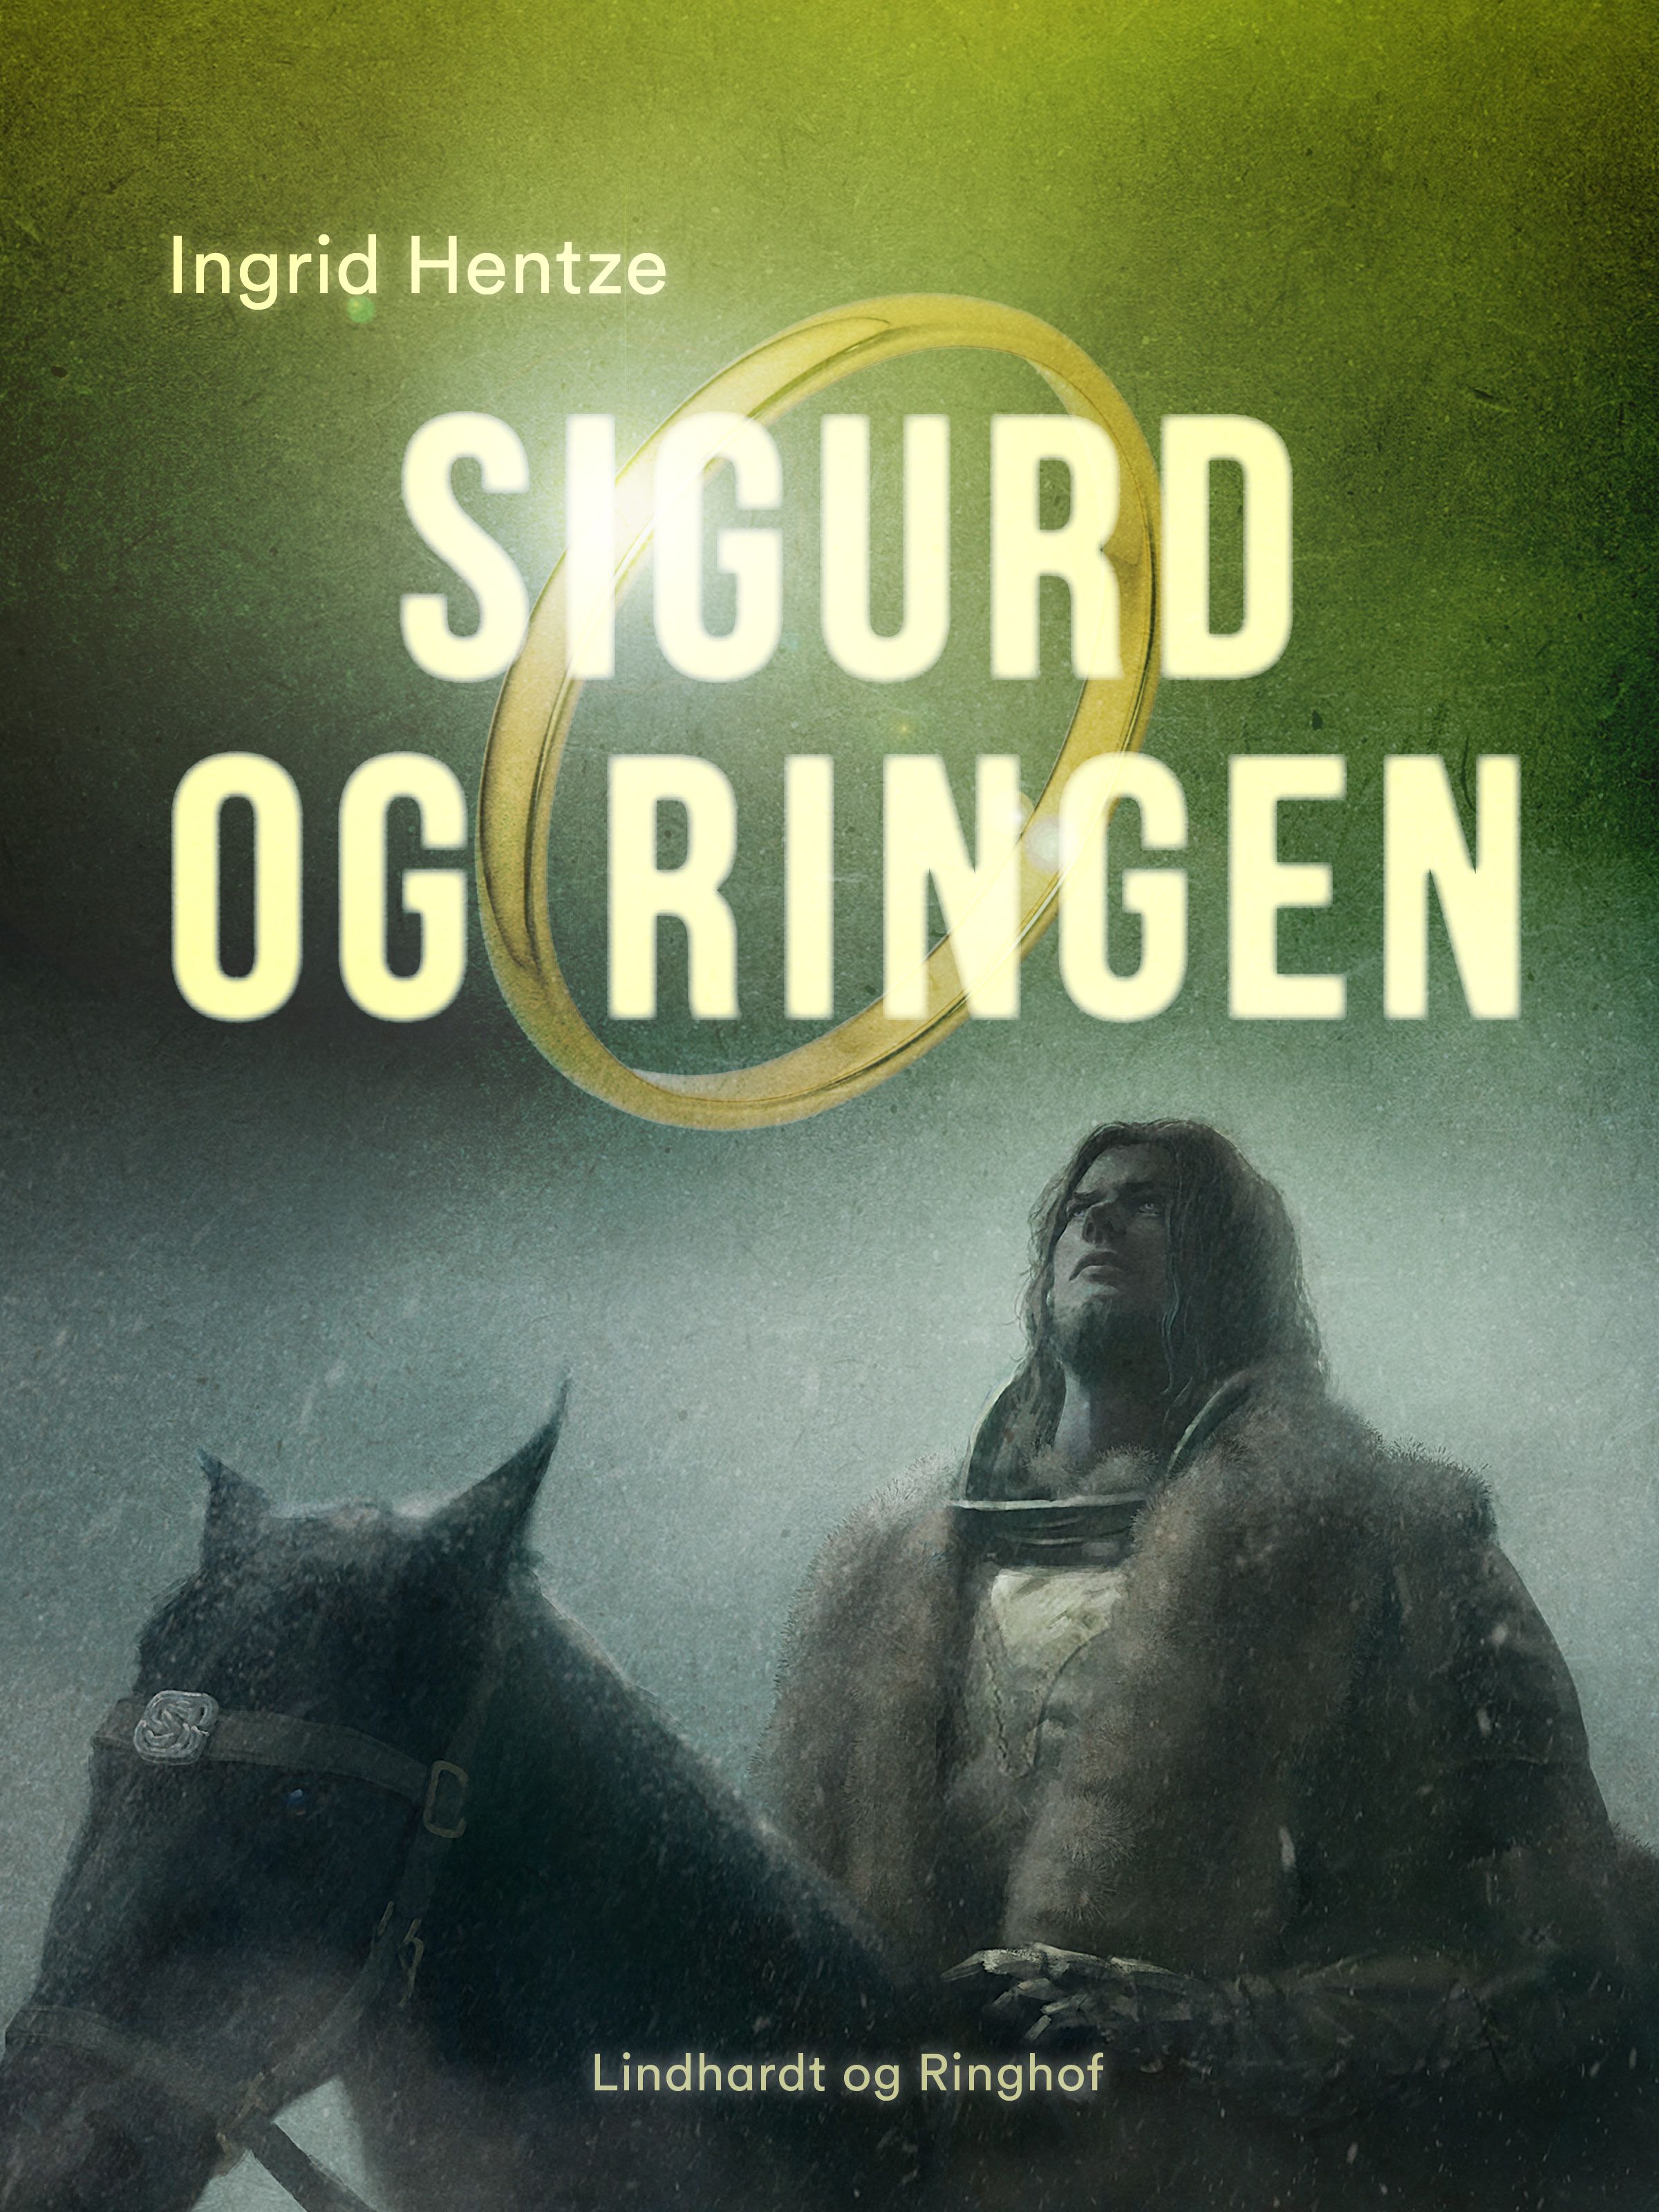 Sigurd og ringen, e-bok av Ingrid Hentze